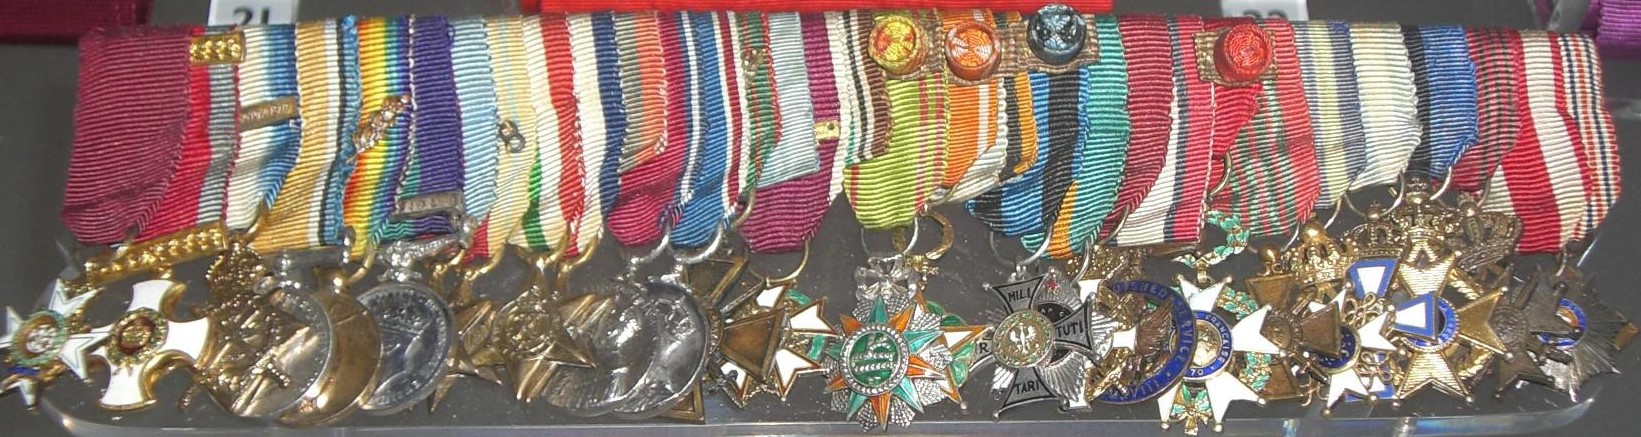 Montgomery medal miniatures-.jpg